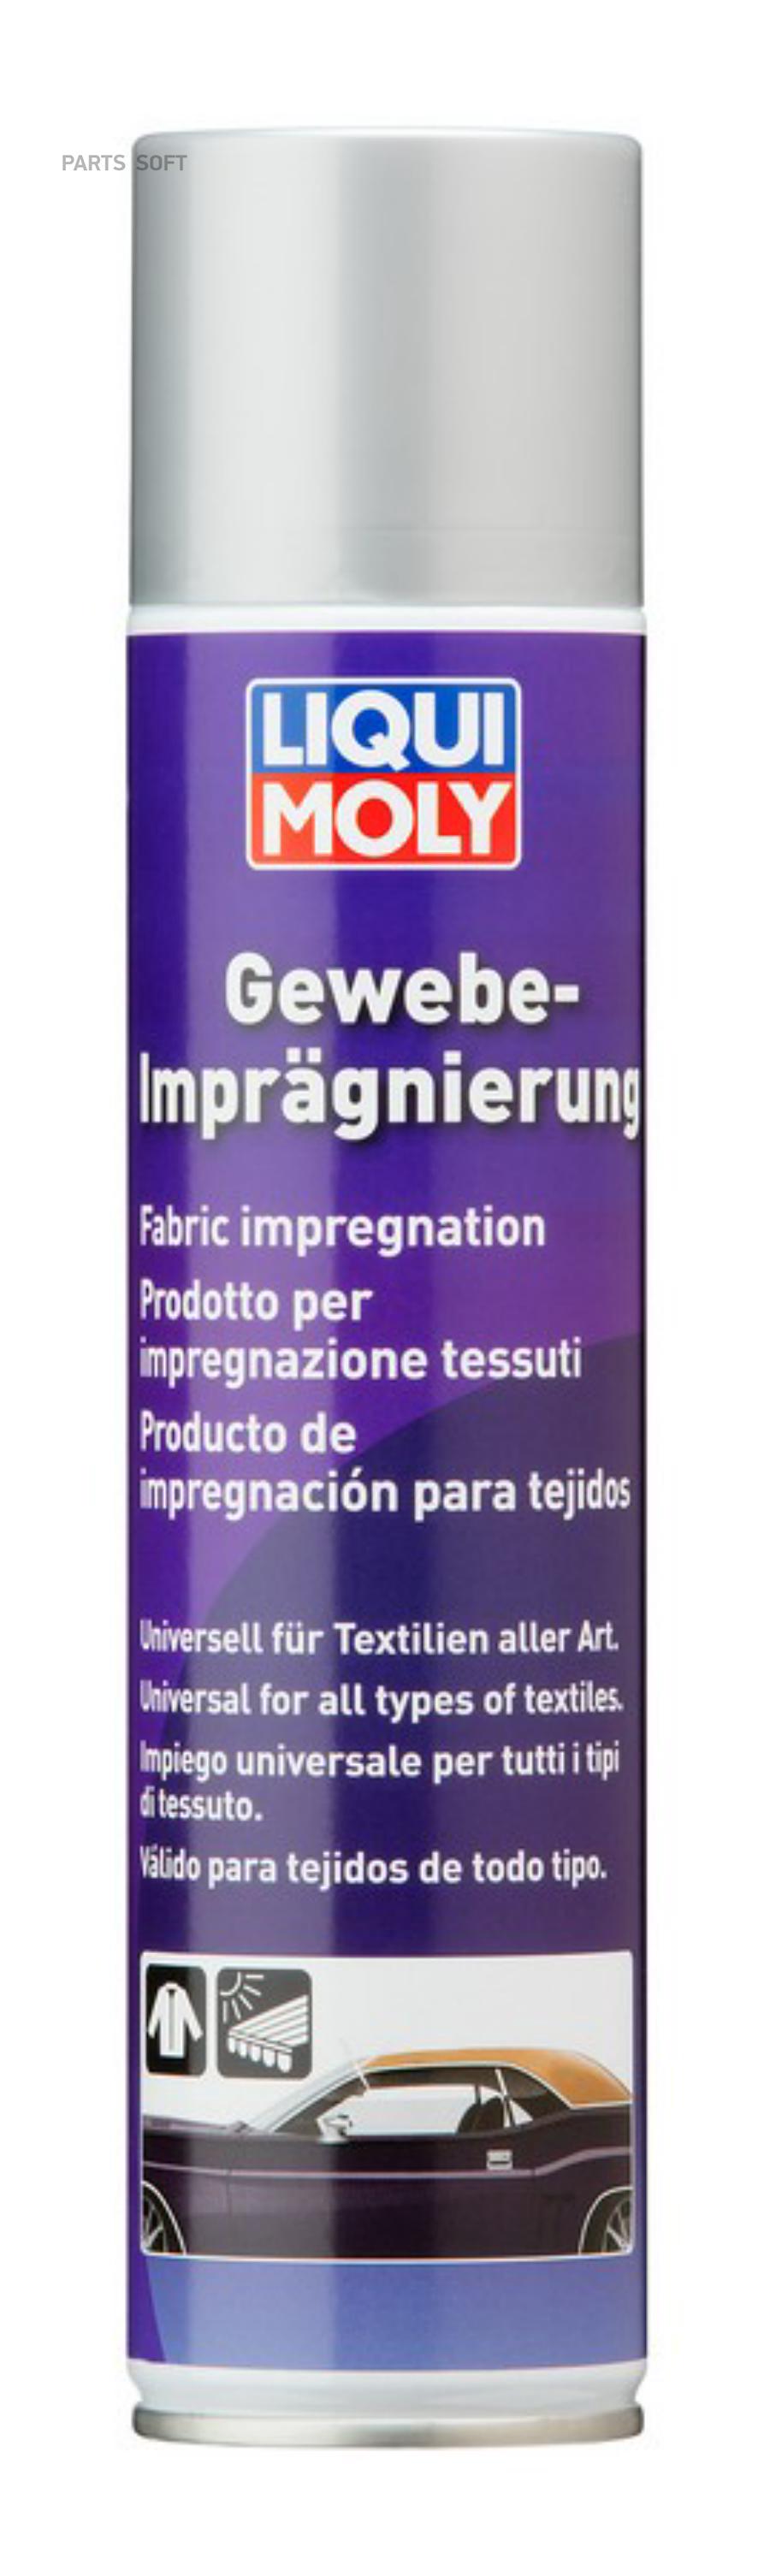 LIQUI MOLY Гидрозащита кожи и текстиля Gewebe-Impragnierung (0,4л)